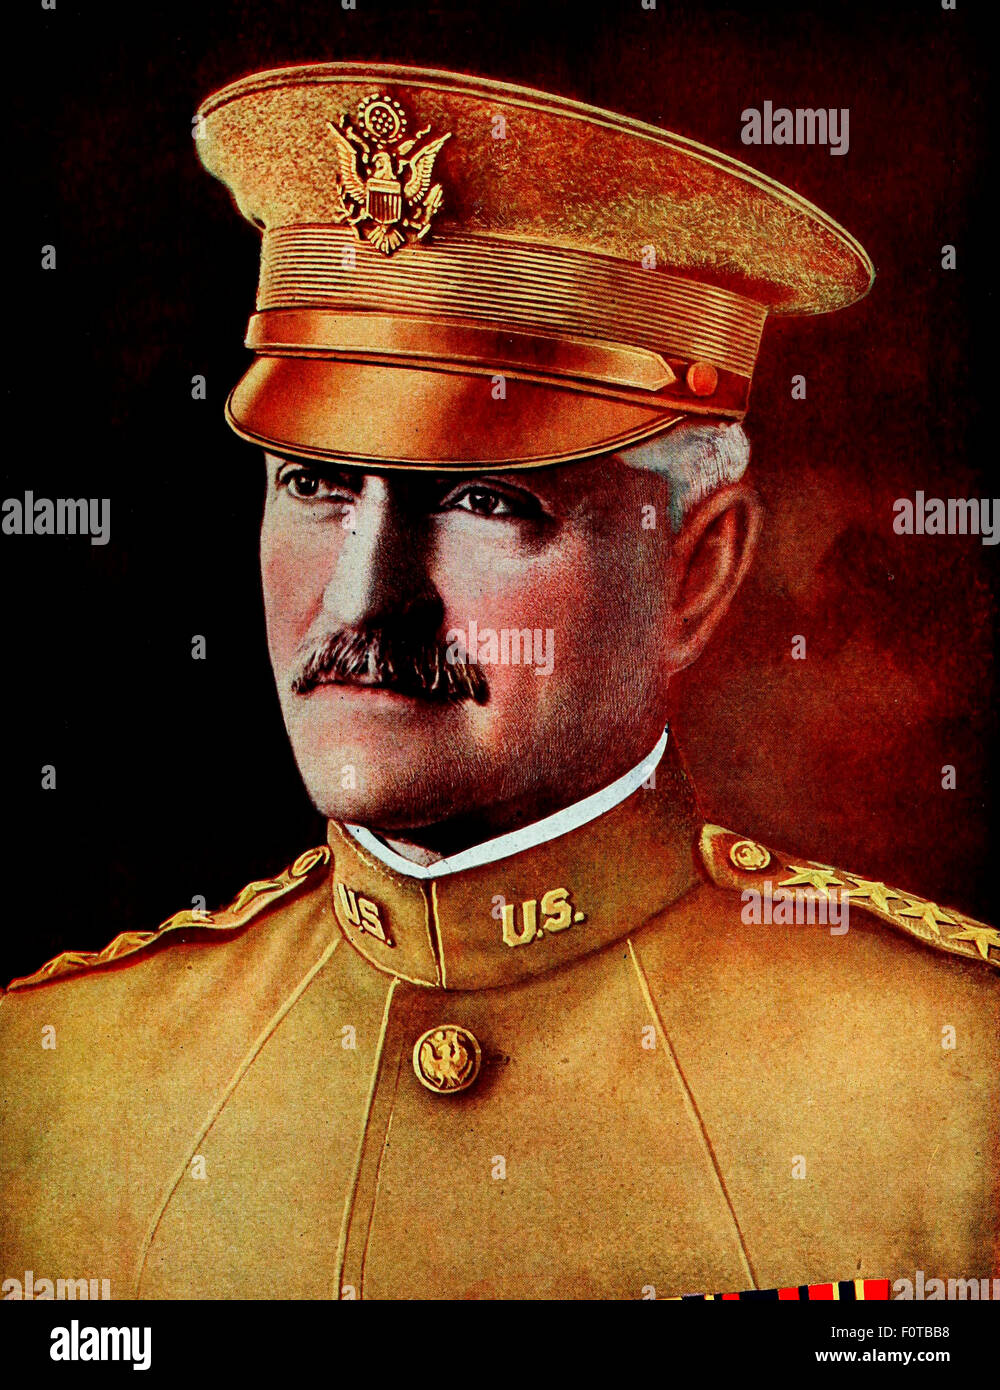 Le général John J. Pershing, commandant en chef des Forces américaines à l'étranger, la Première Guerre mondiale Banque D'Images